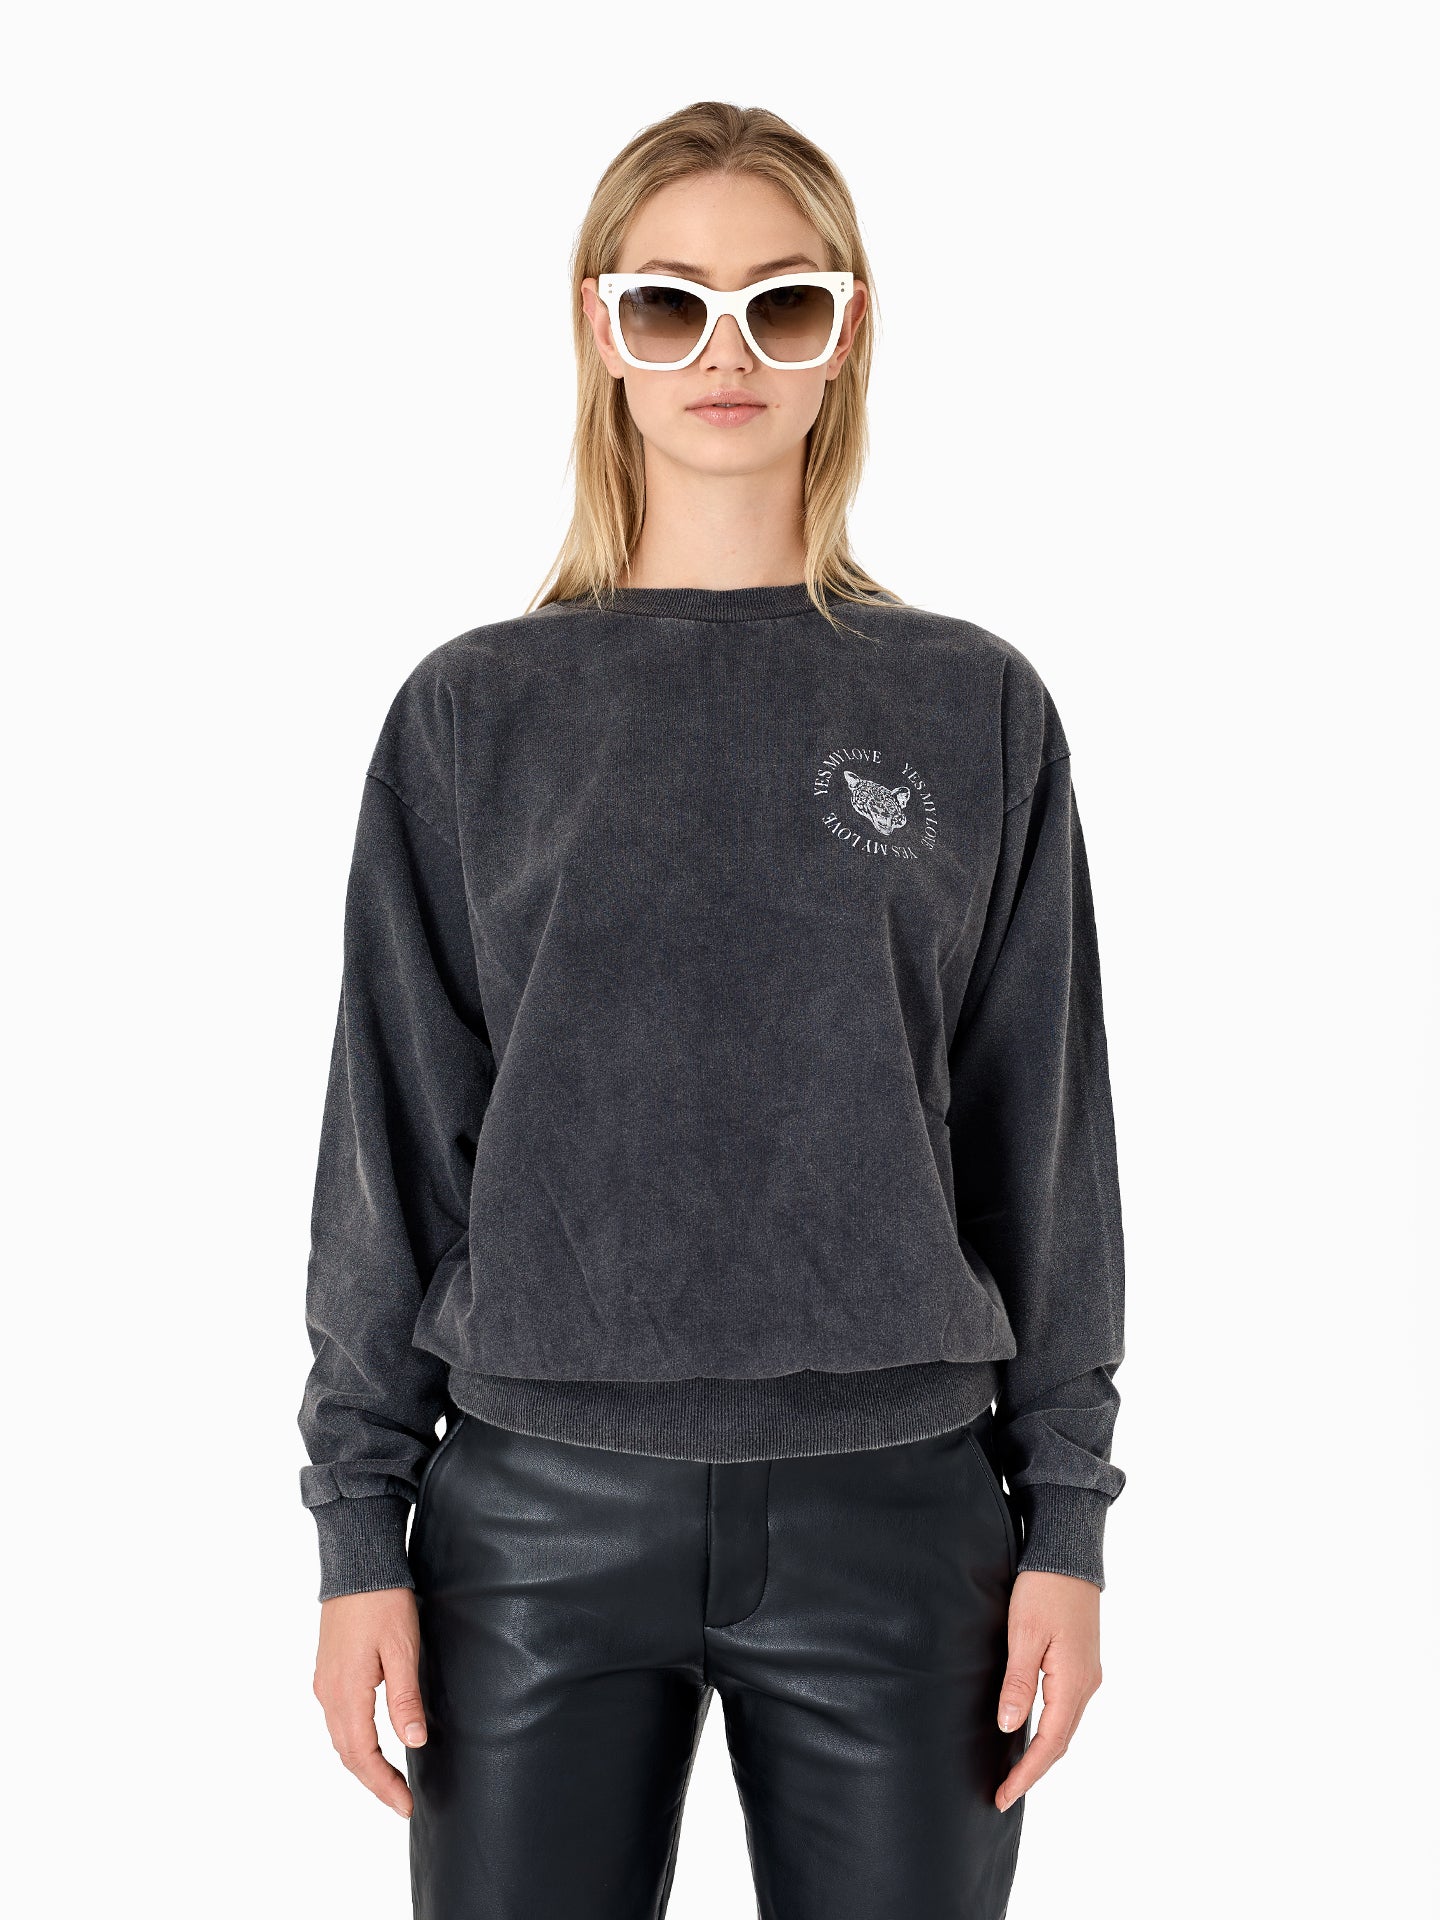 Leohead Sweater - Vintage Black